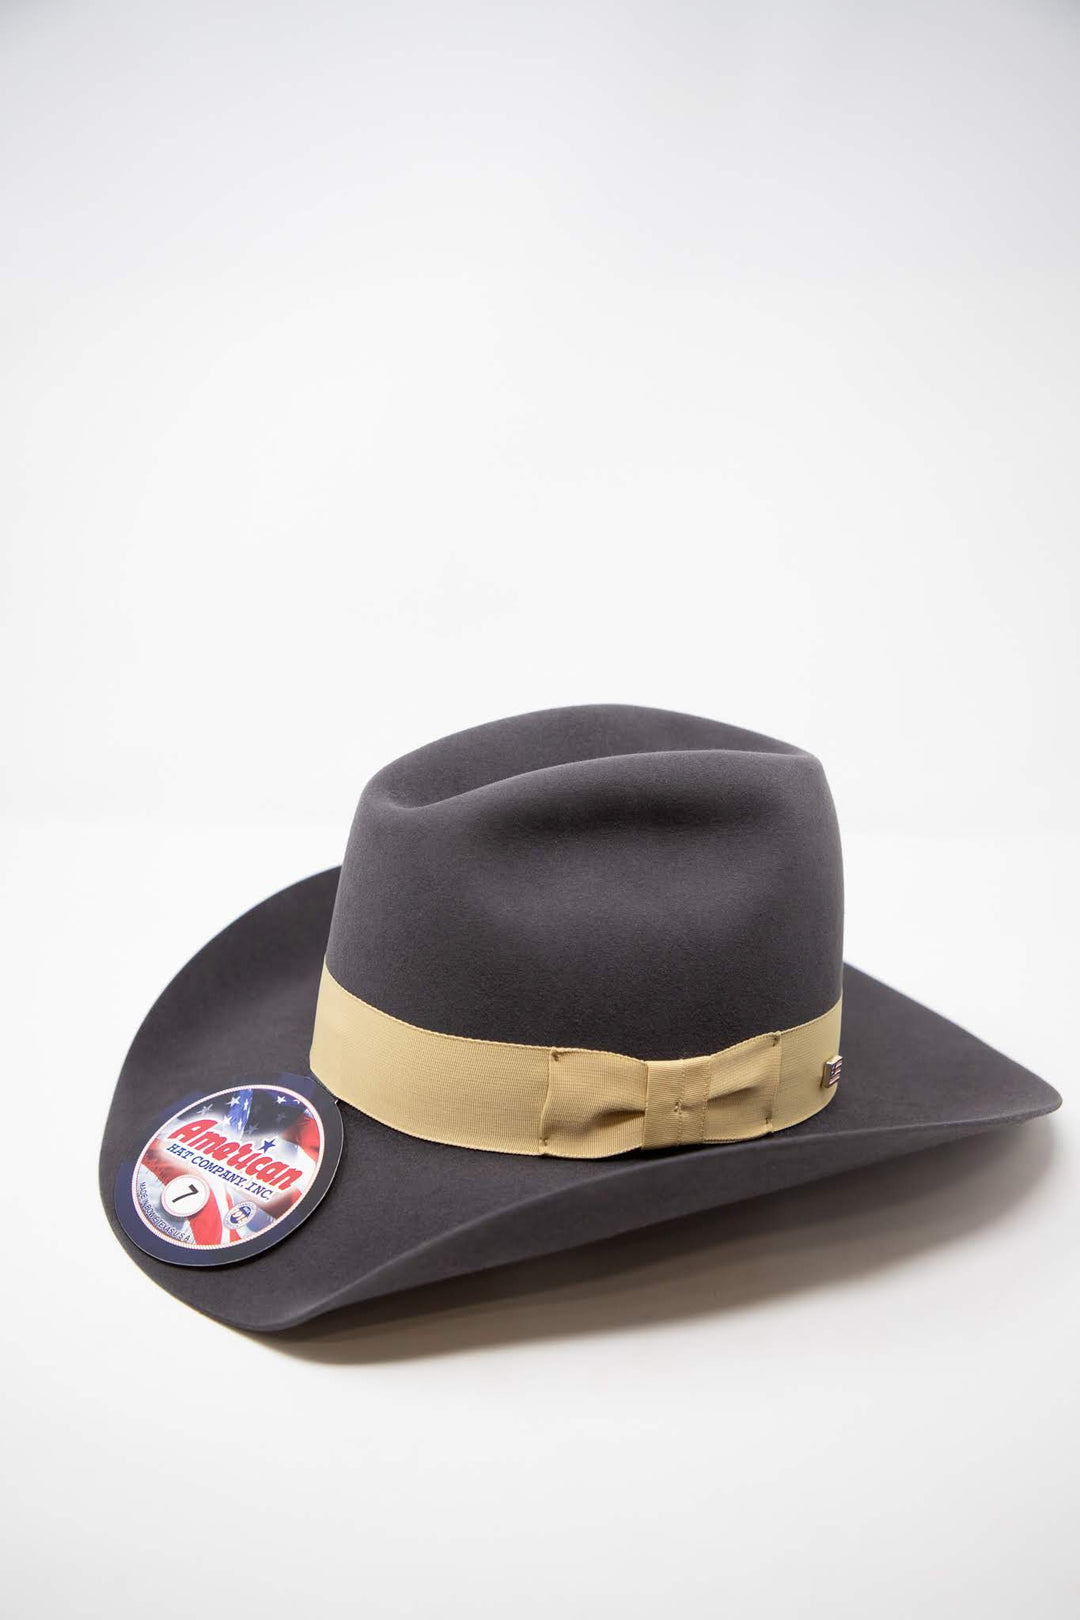 American Hat Co. 7x Steel Buckskin Ribbon Felt Hat